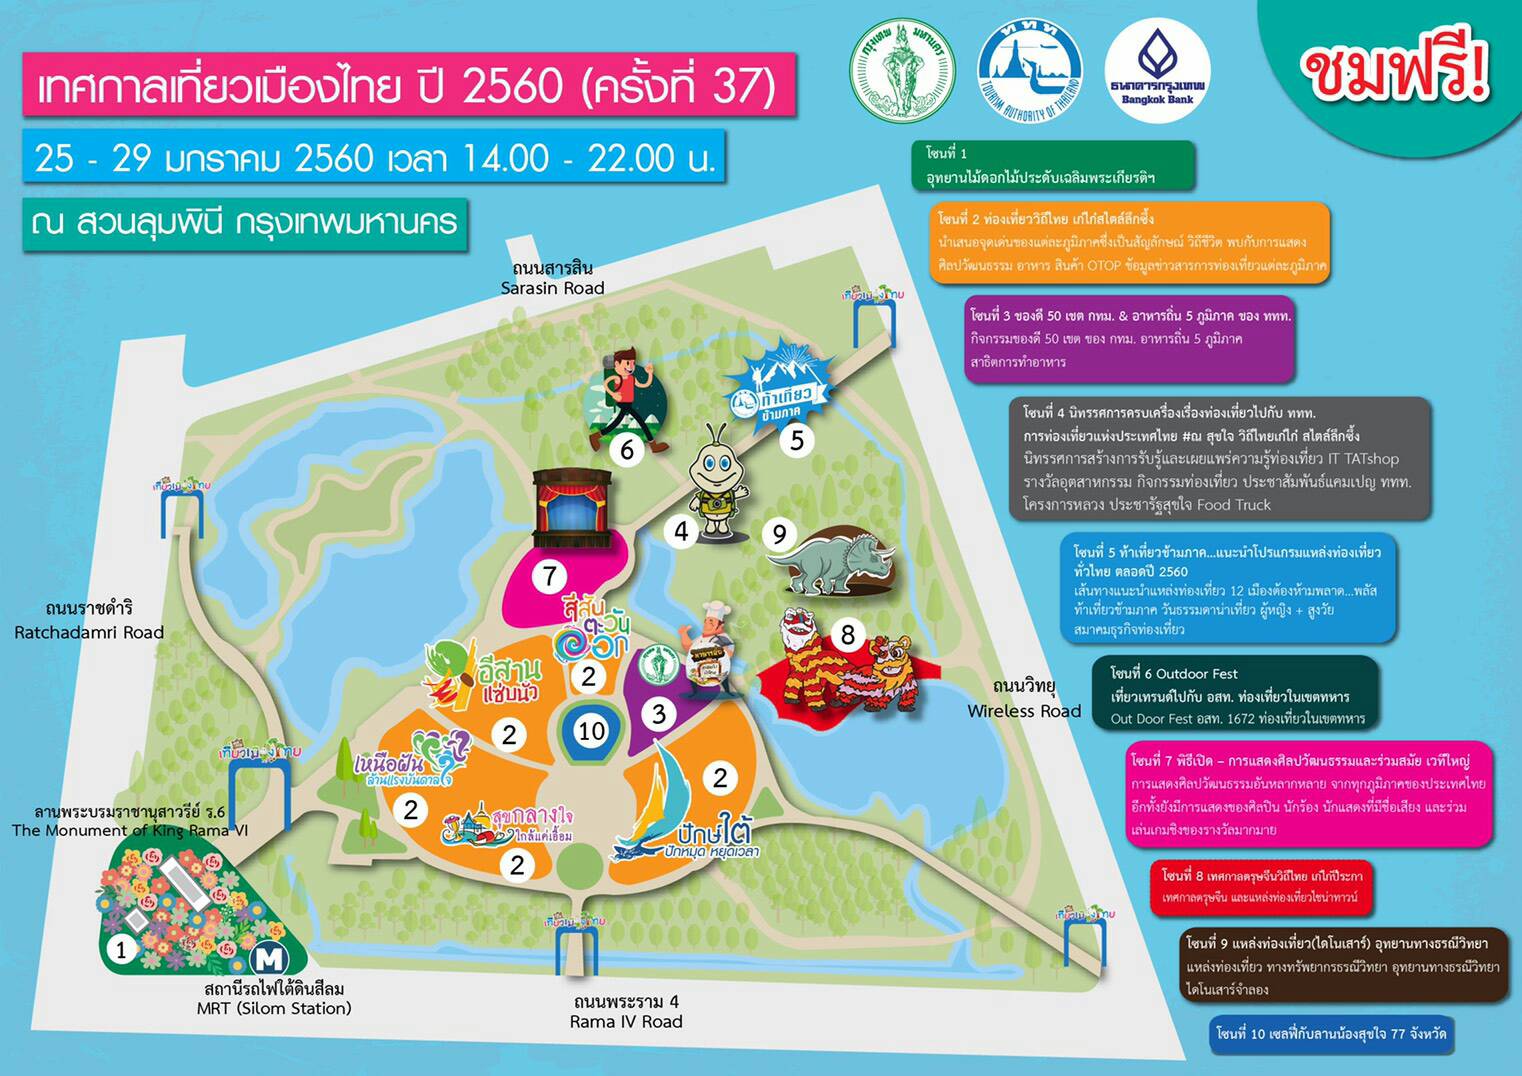 เทศกาลเที่ยวเมืองไทย ครั้งที่ 37 วันที่ 25-29 ม.ค. นี้ ณ สวนลุมพินี